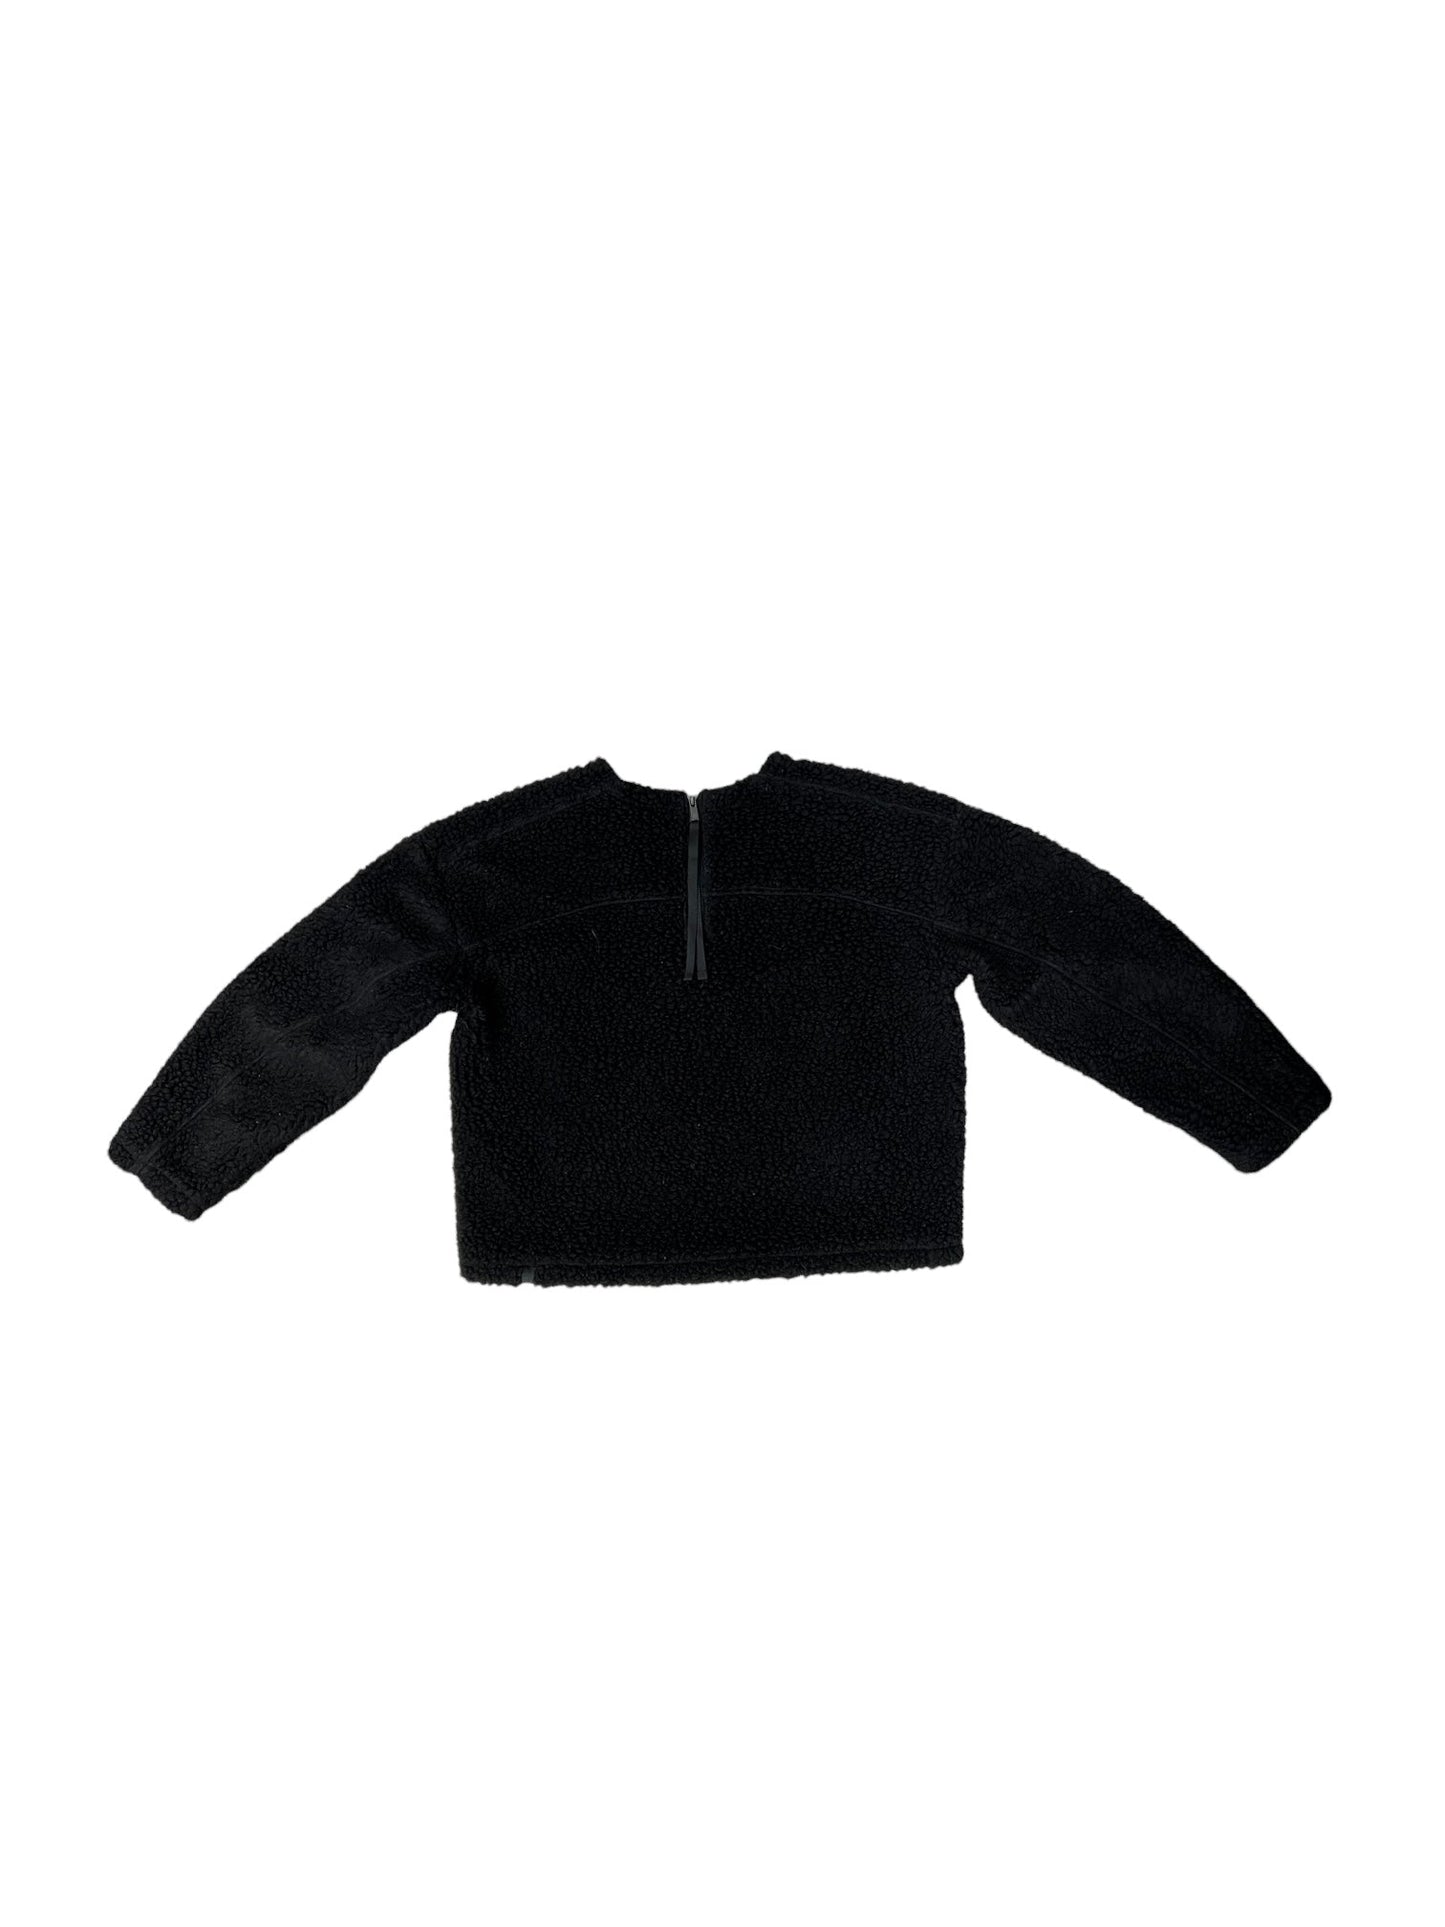 Black Sweater Lululemon